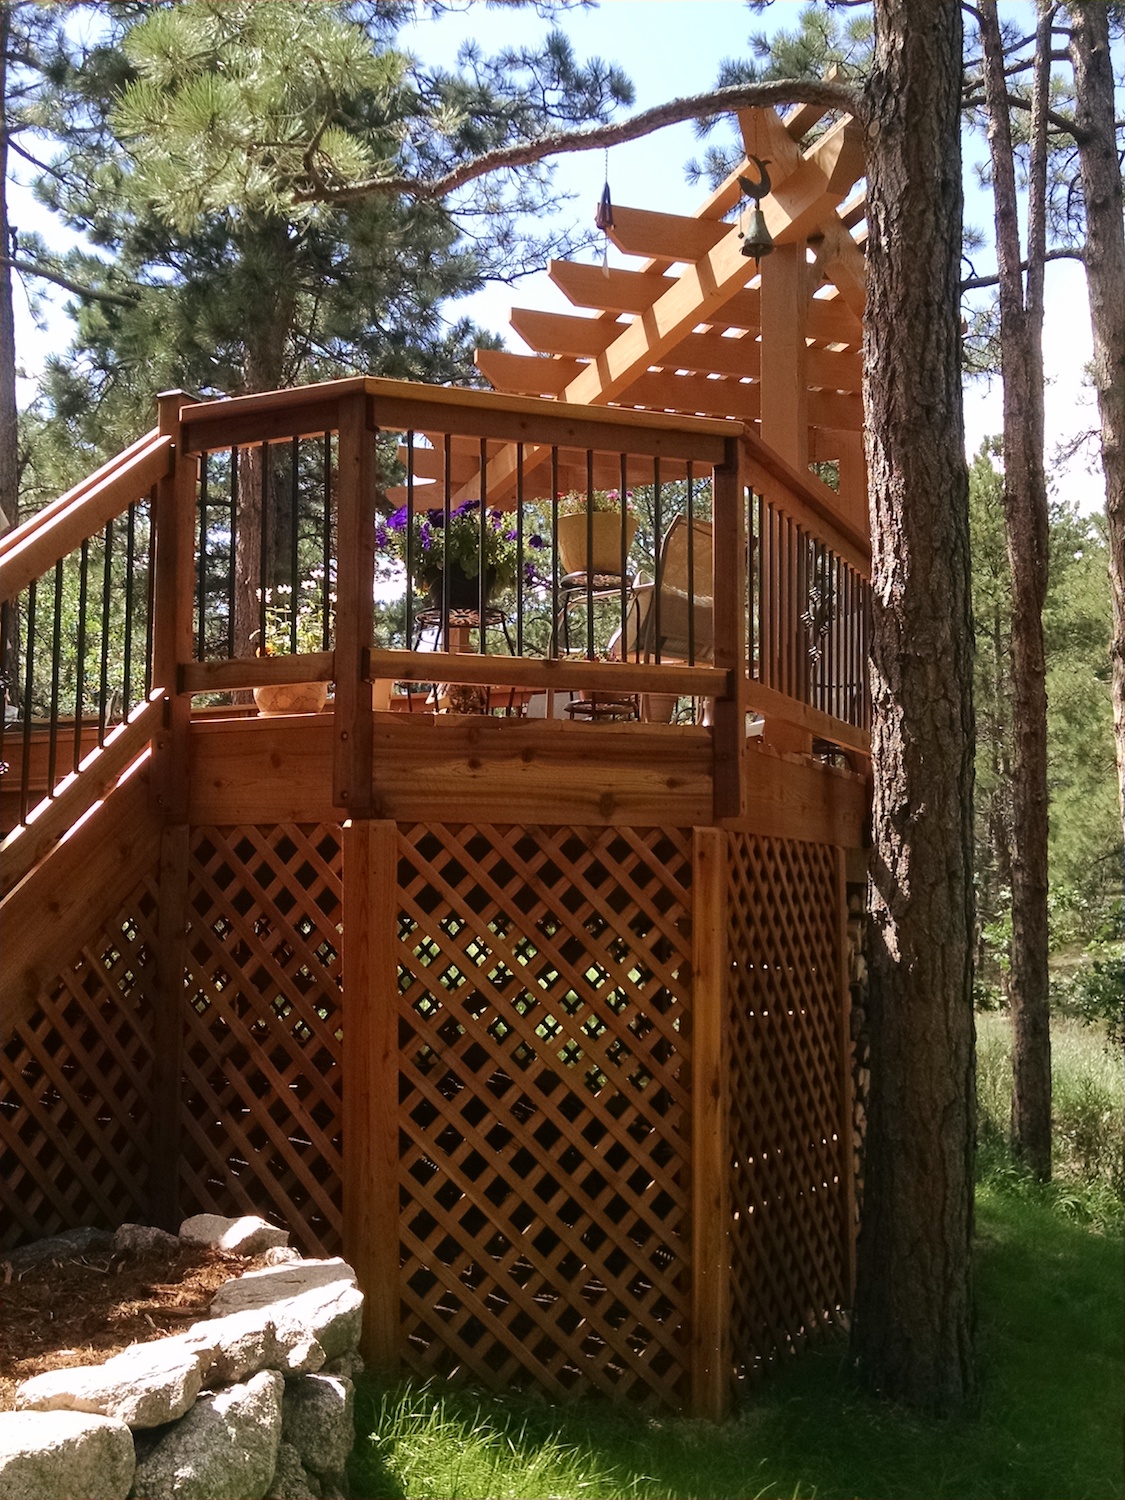 Lattice installed under a deck to prevent wildlife nesting.